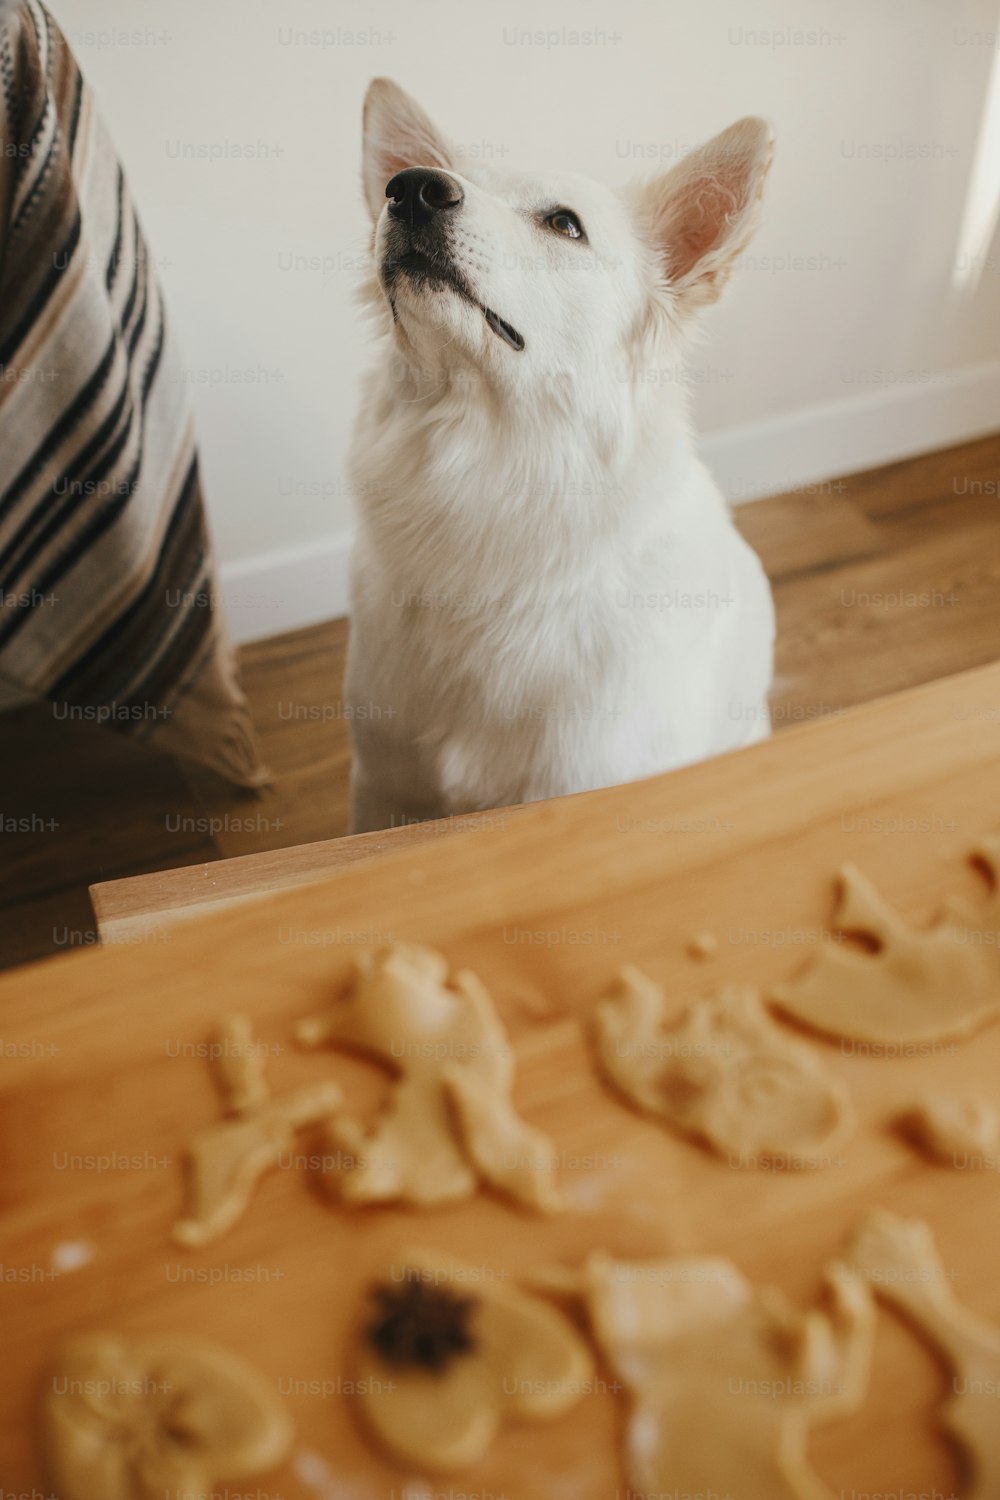 Lindo perro blanco sentado en la masa de galletas de jengibre en una mesa de madera en una habitación moderna. Divertido y curioso perro pastor suizo y galletas navideñas. Momento auténtico. Preparación para mascotas y vacaciones